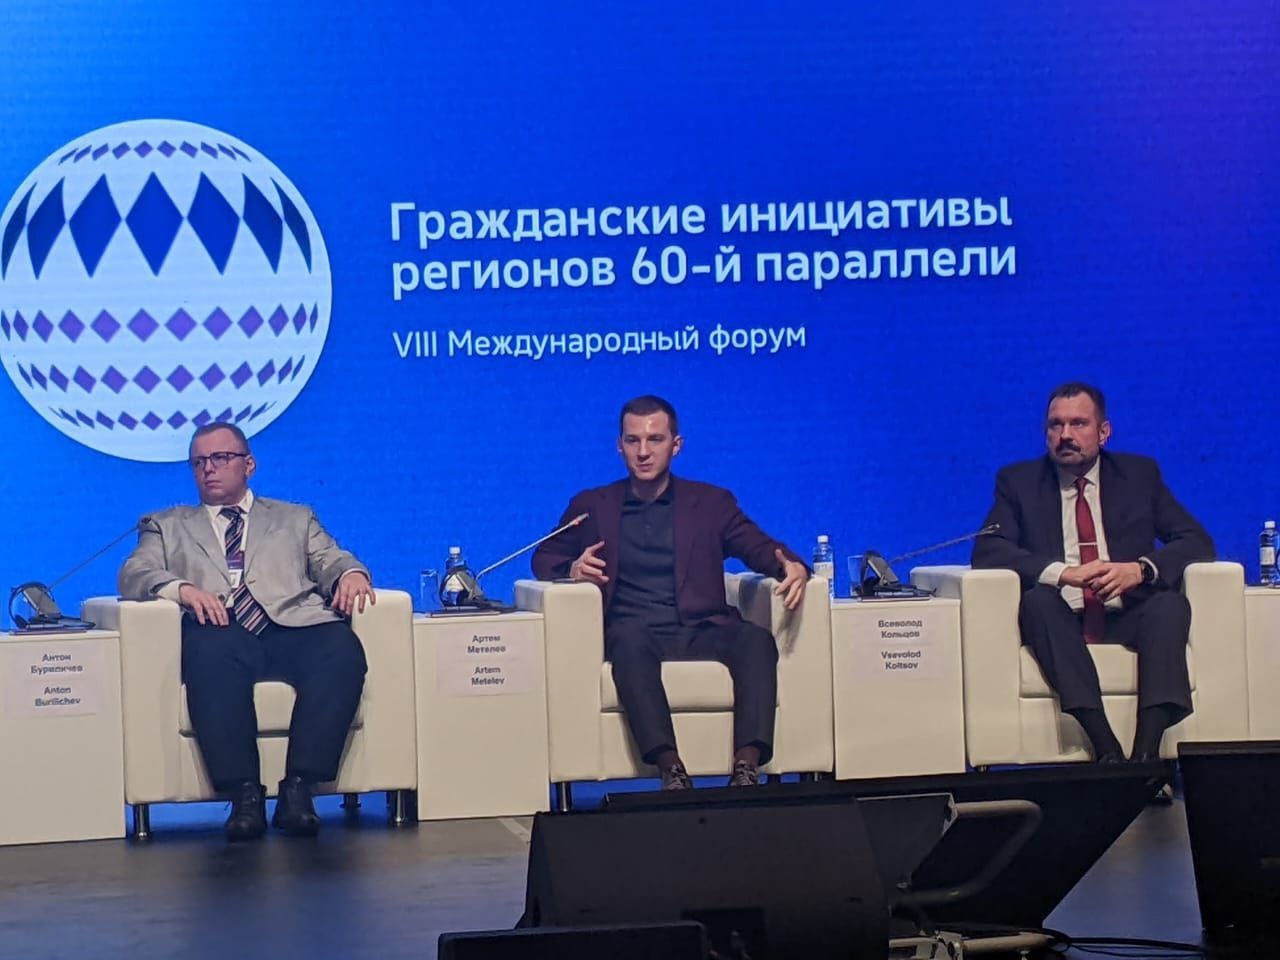 С 16 по 17 ноября в Ханты-Мансийске проходит VIII Международный гуманитарный форум «Гражданские инициативы регионов 60-й параллели»